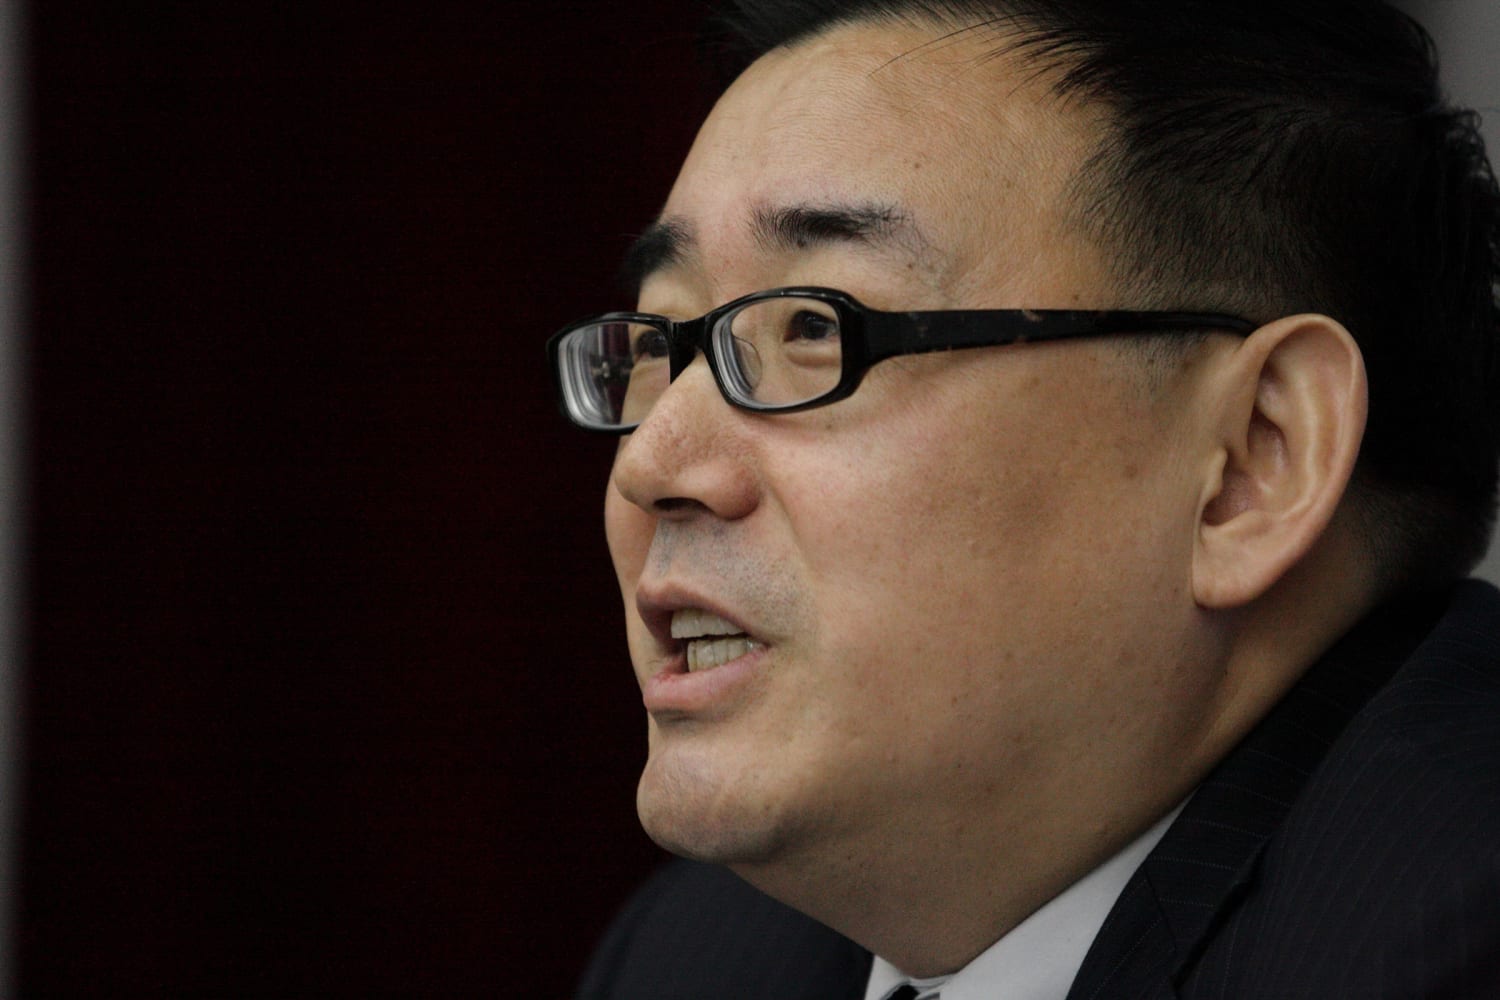 Australijski pisarz Yang Hengjun został skazany w Chinach na karę śmierci w zawieszeniu